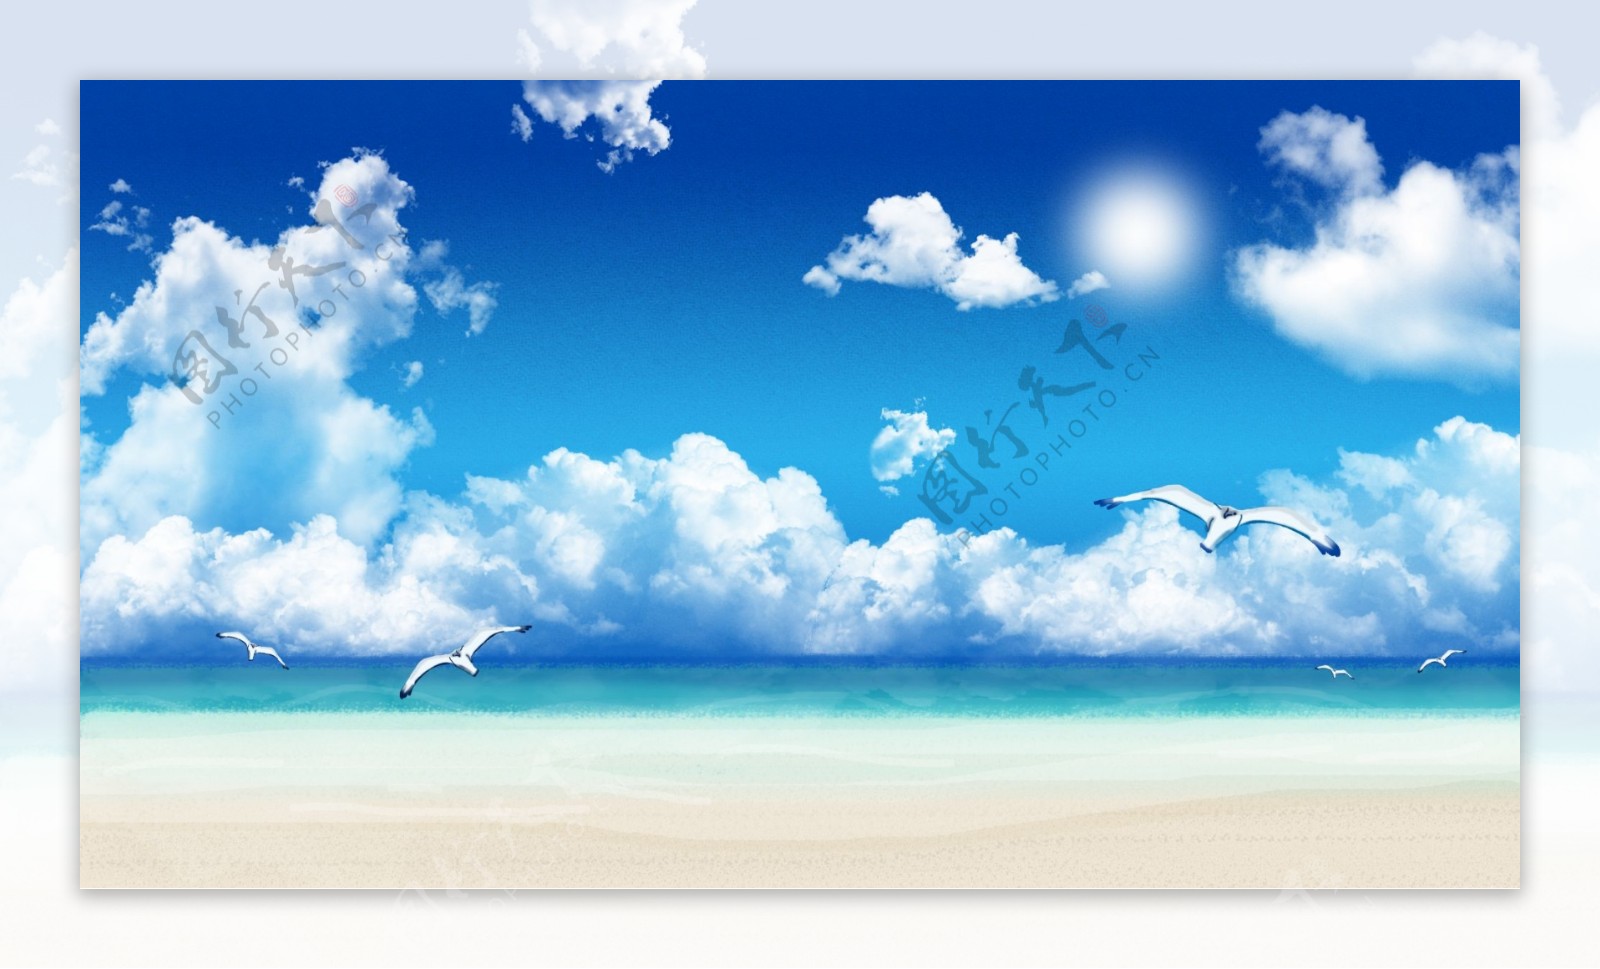 蓝天下的蓝色海洋上空飞翔的鸟儿卡通背景